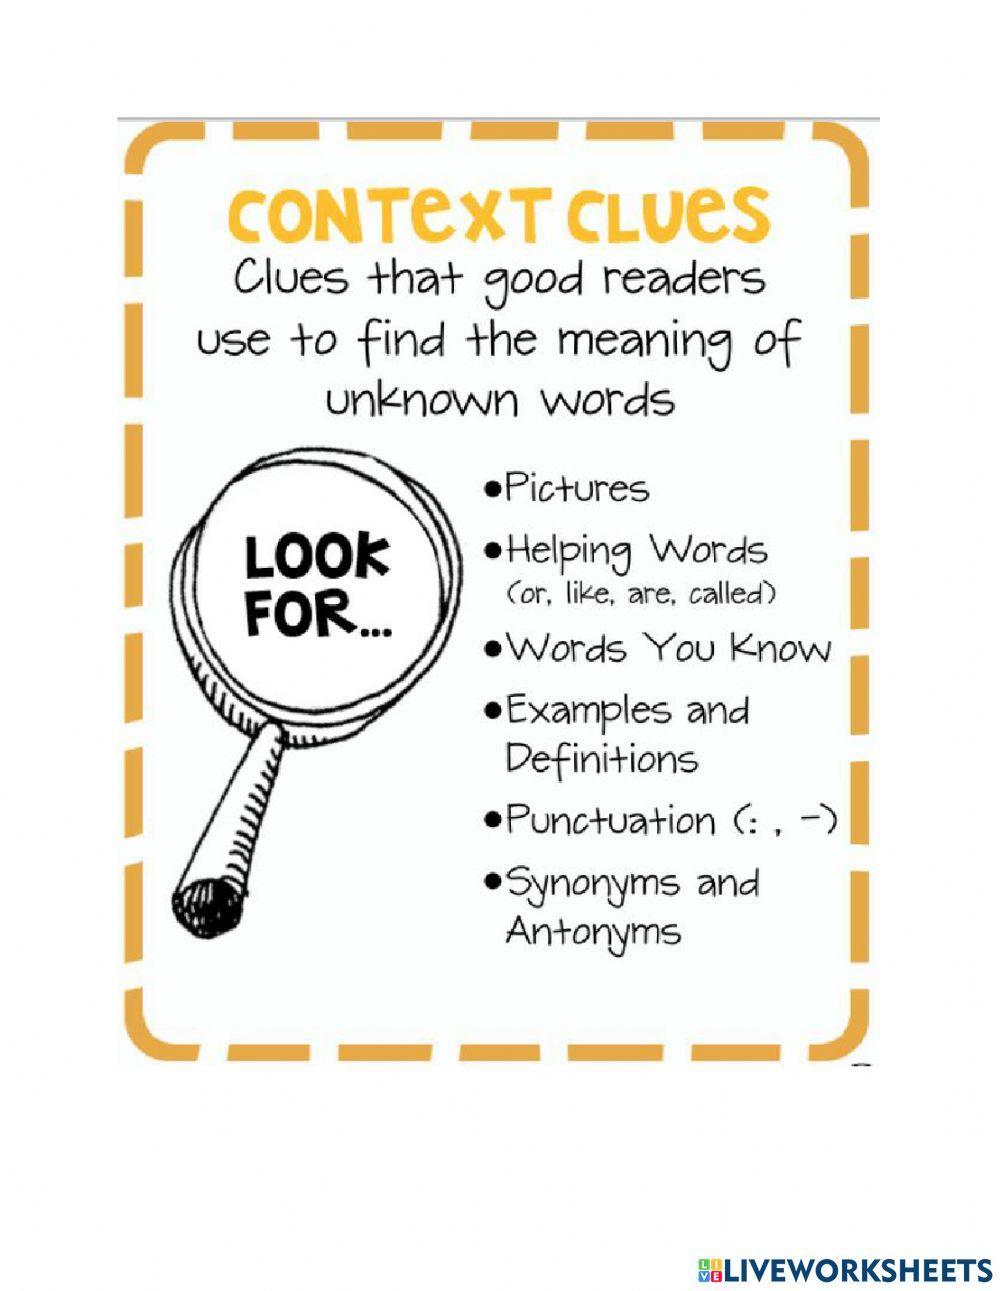 Context clues Notes